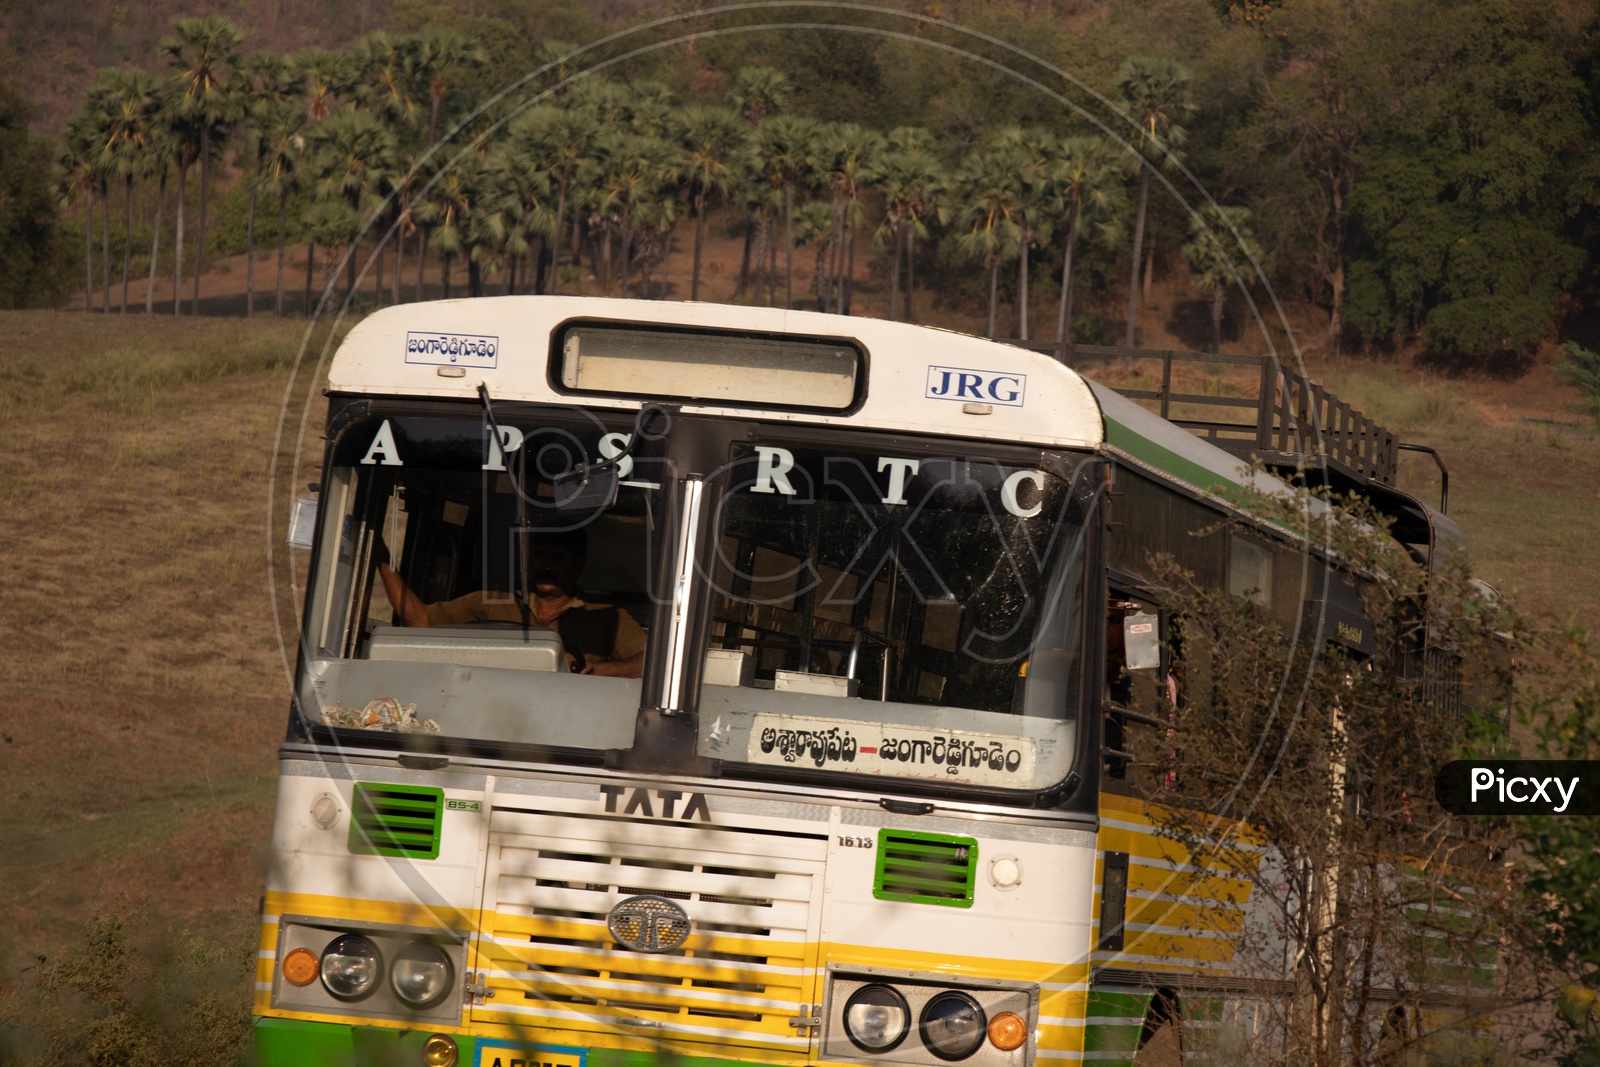 APSRTC Bus Running Between Rural Villages Terrain Roads